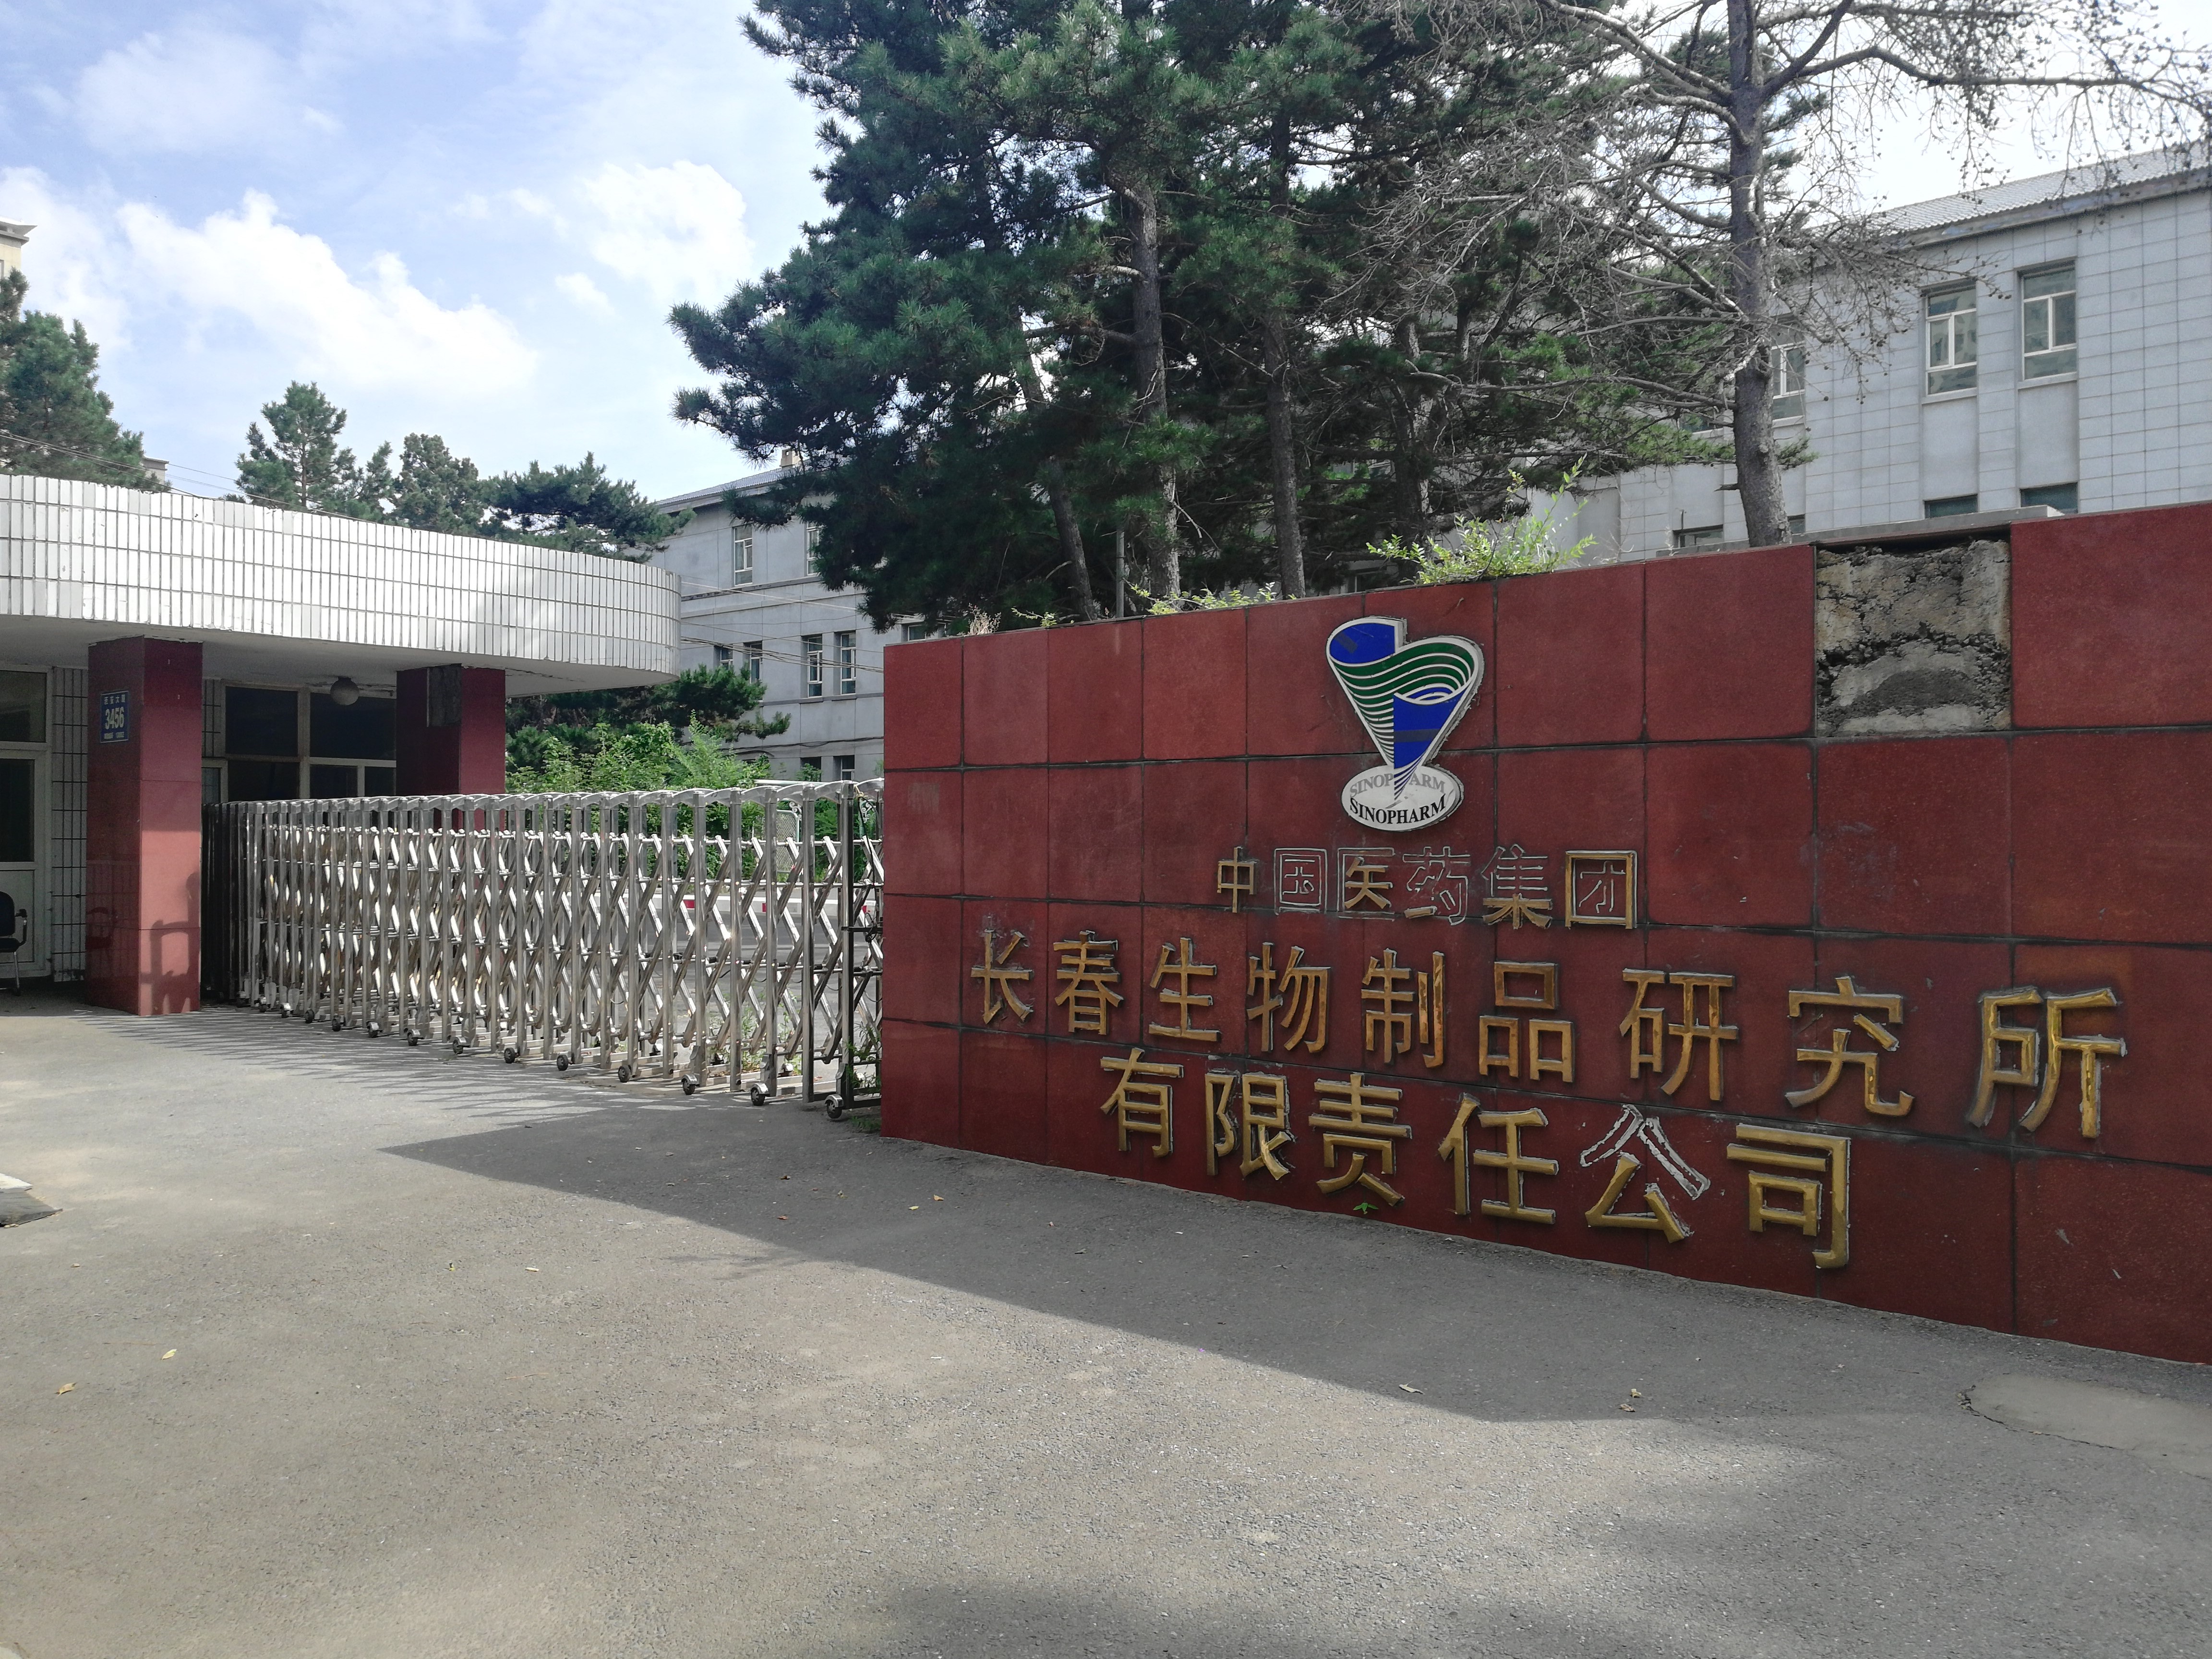 2018年7月24日的老长春生物制品研究所旧址,这里已经无人办公